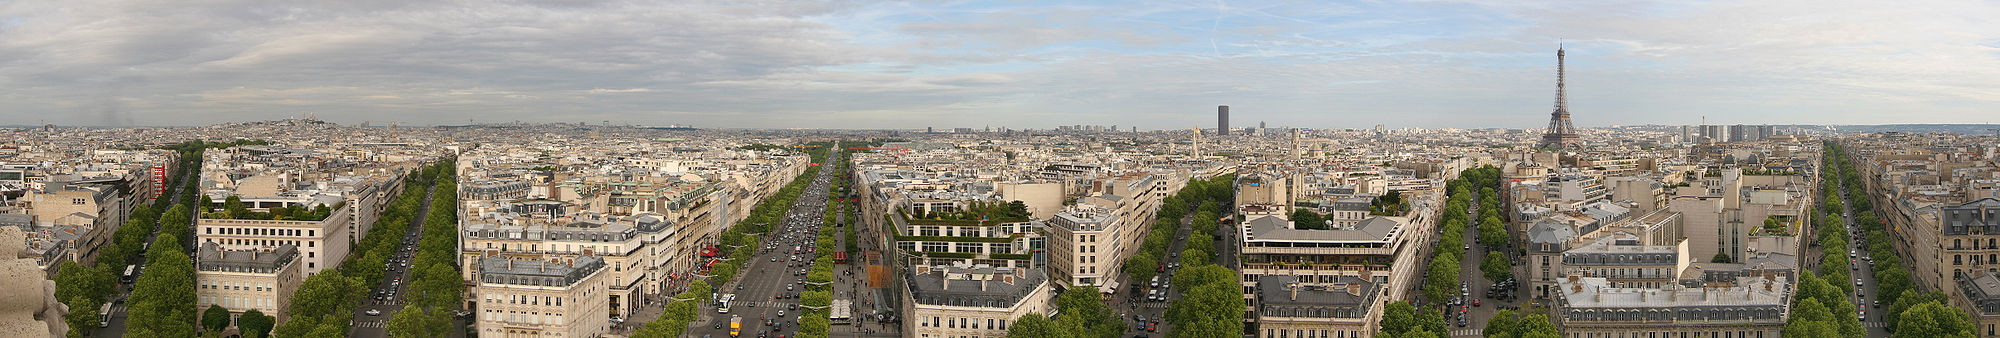 Vue panoramique de Paris depuis l'Arc de Triomphe, avec la tour Eiffel à droite.